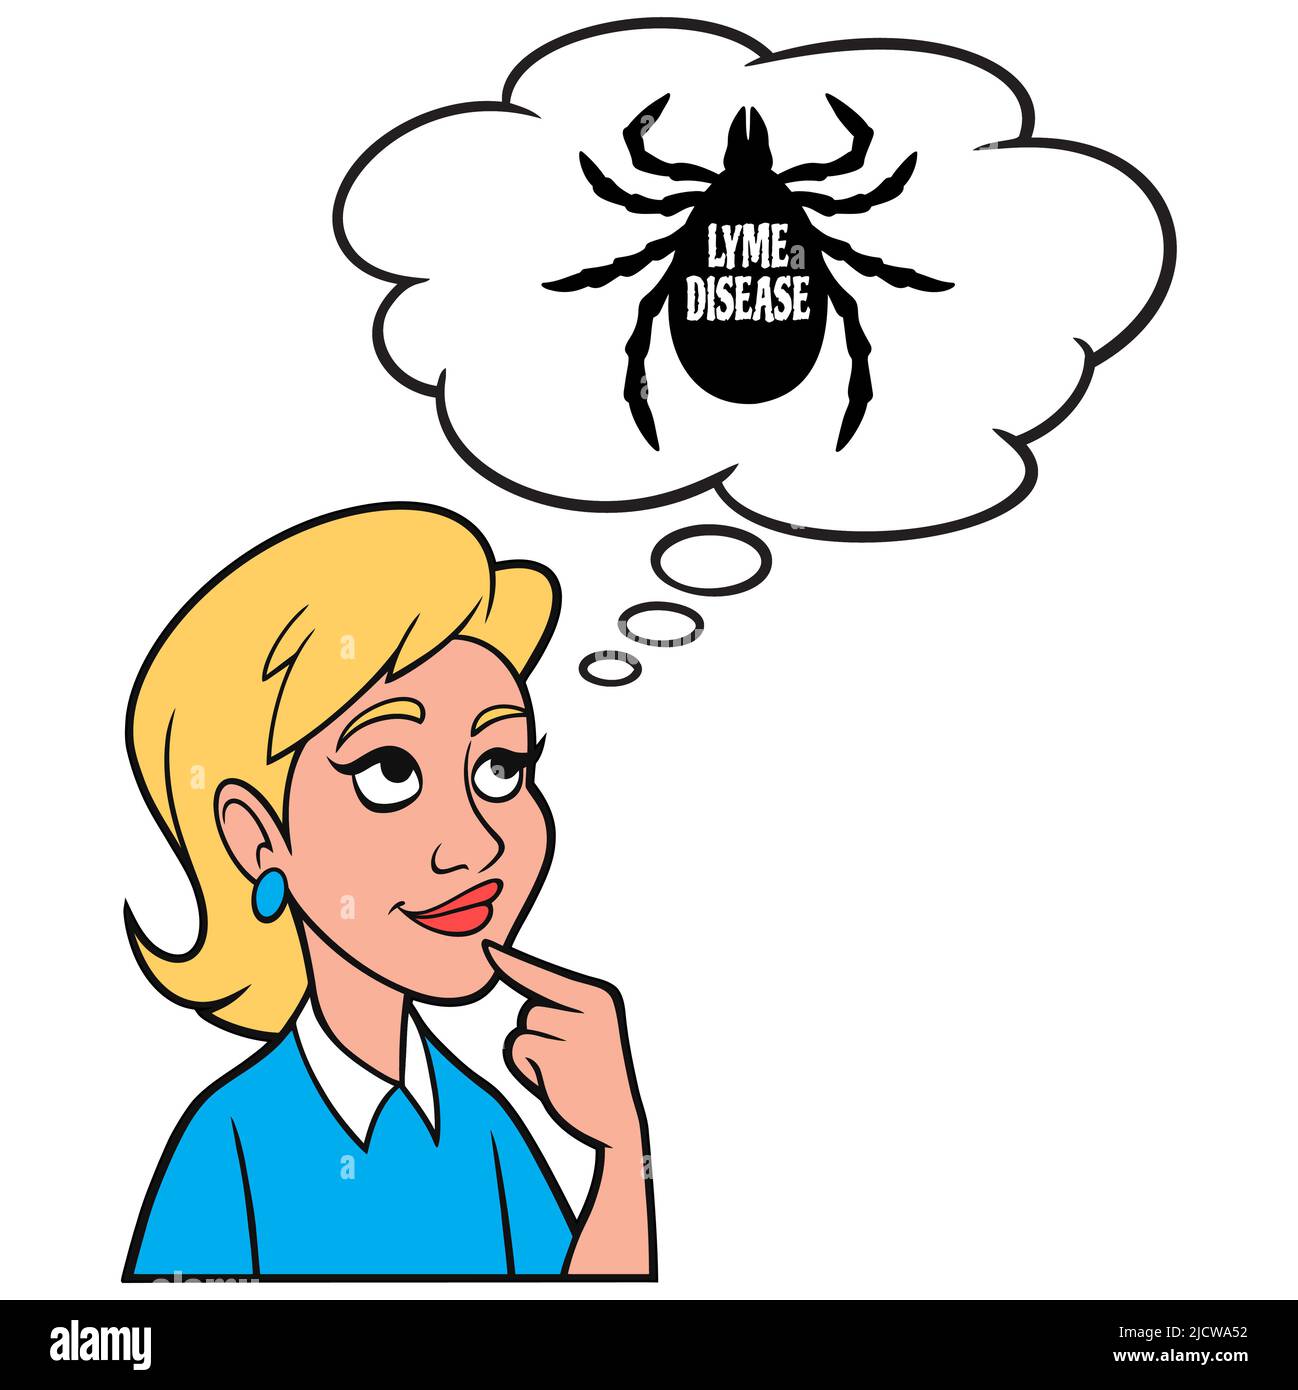 Girl Thinking about Lyme Disease - Eine Cartoon-Illustration eines Mädchens Denken über die Nebenwirkungen der Lyme-Borreliose. Stock Vektor